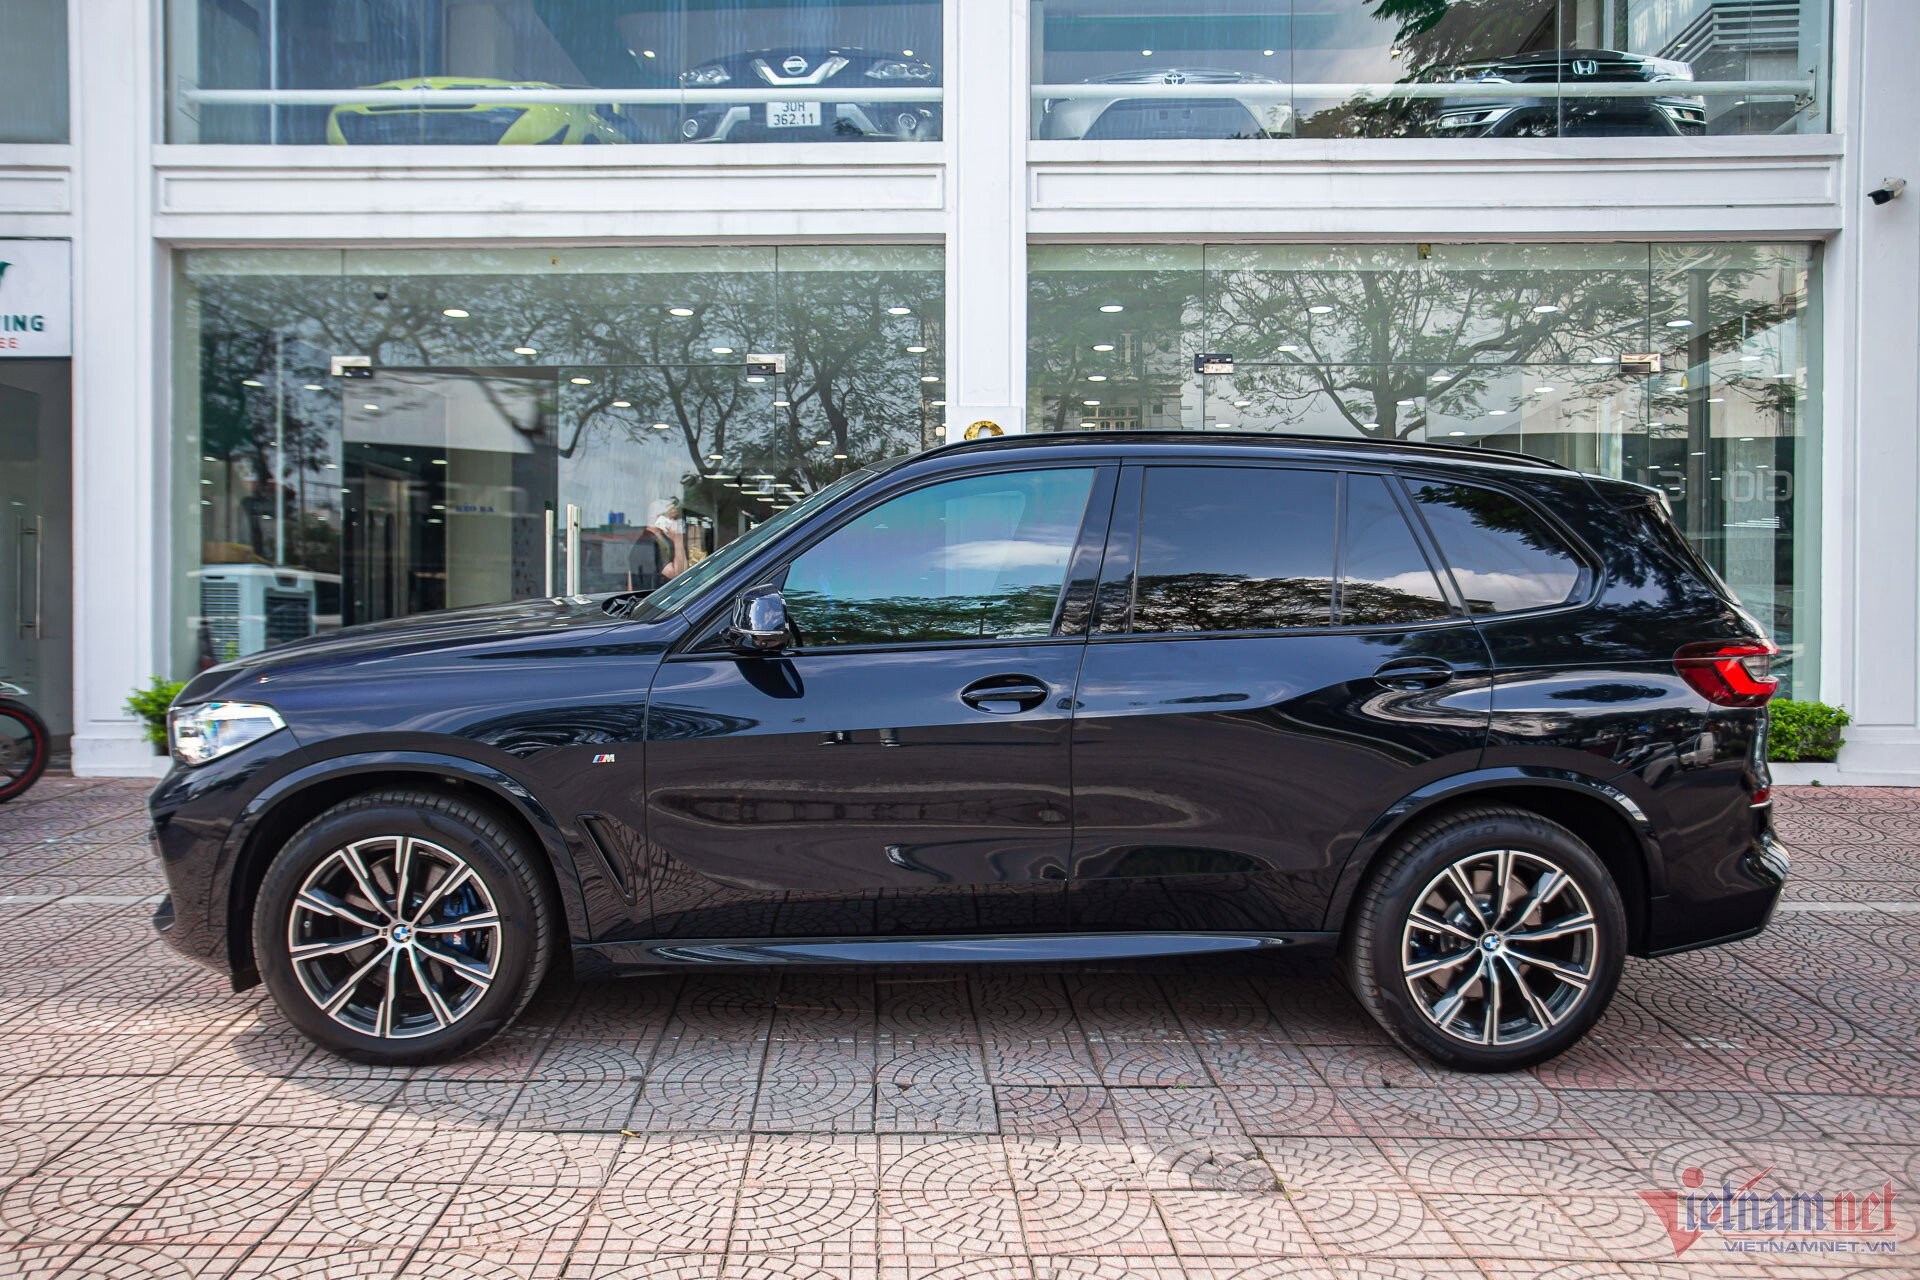 BMW X5 đời 2020 mới lăn bánh 100 km, chủ xe bán lỗ hơn 1 tỷ đồng - 5